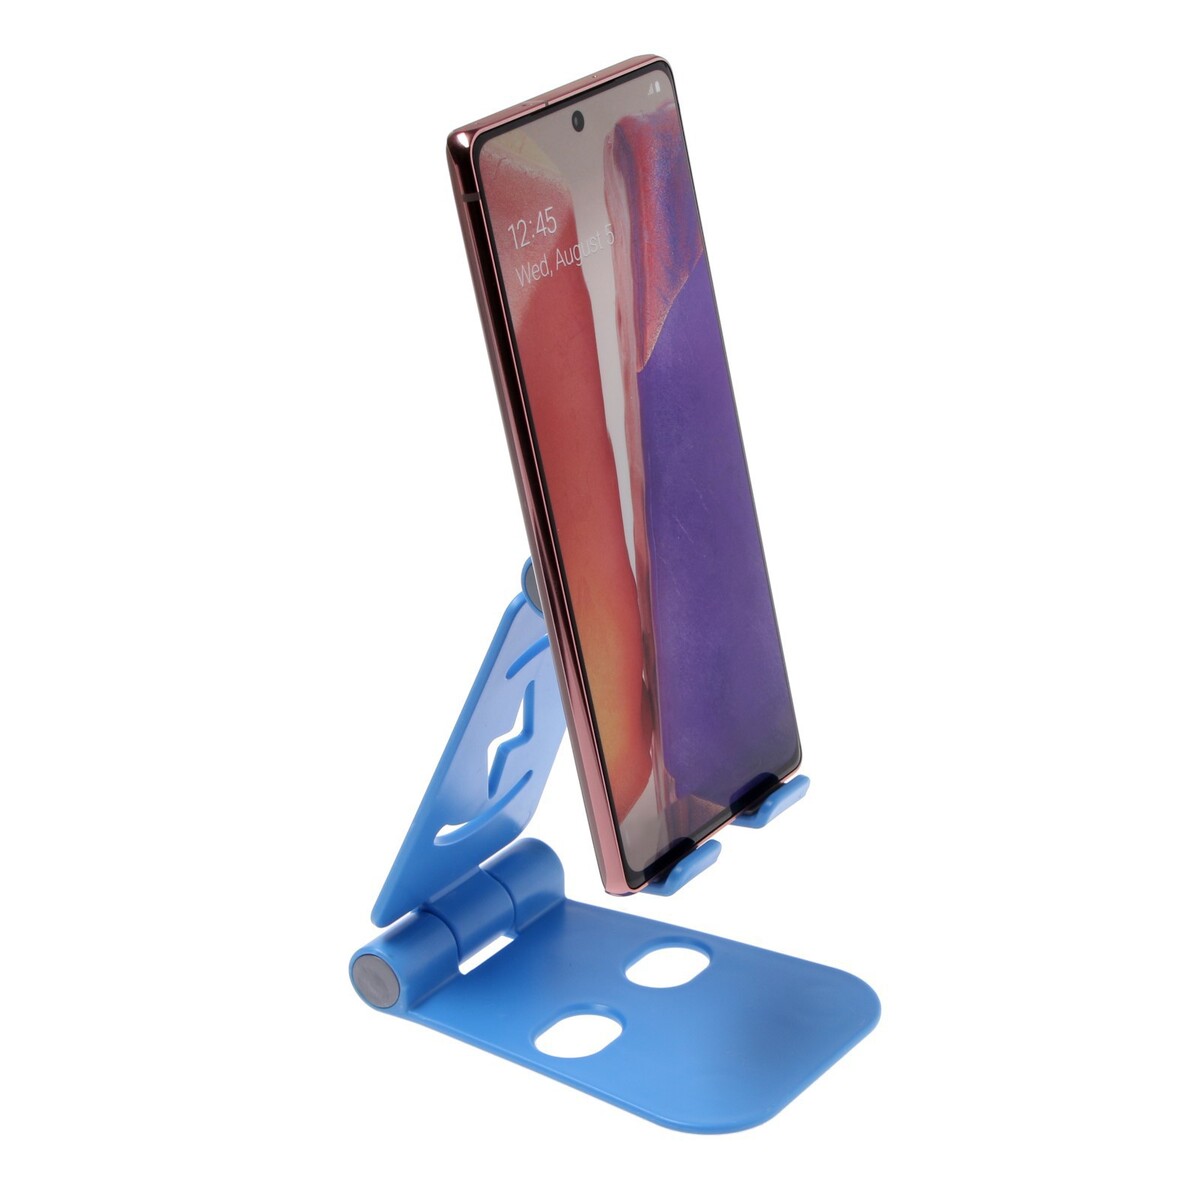 Подставка для телефона luazon, регулируемая высота, силиконовые вставки, синяя, Luazon Home